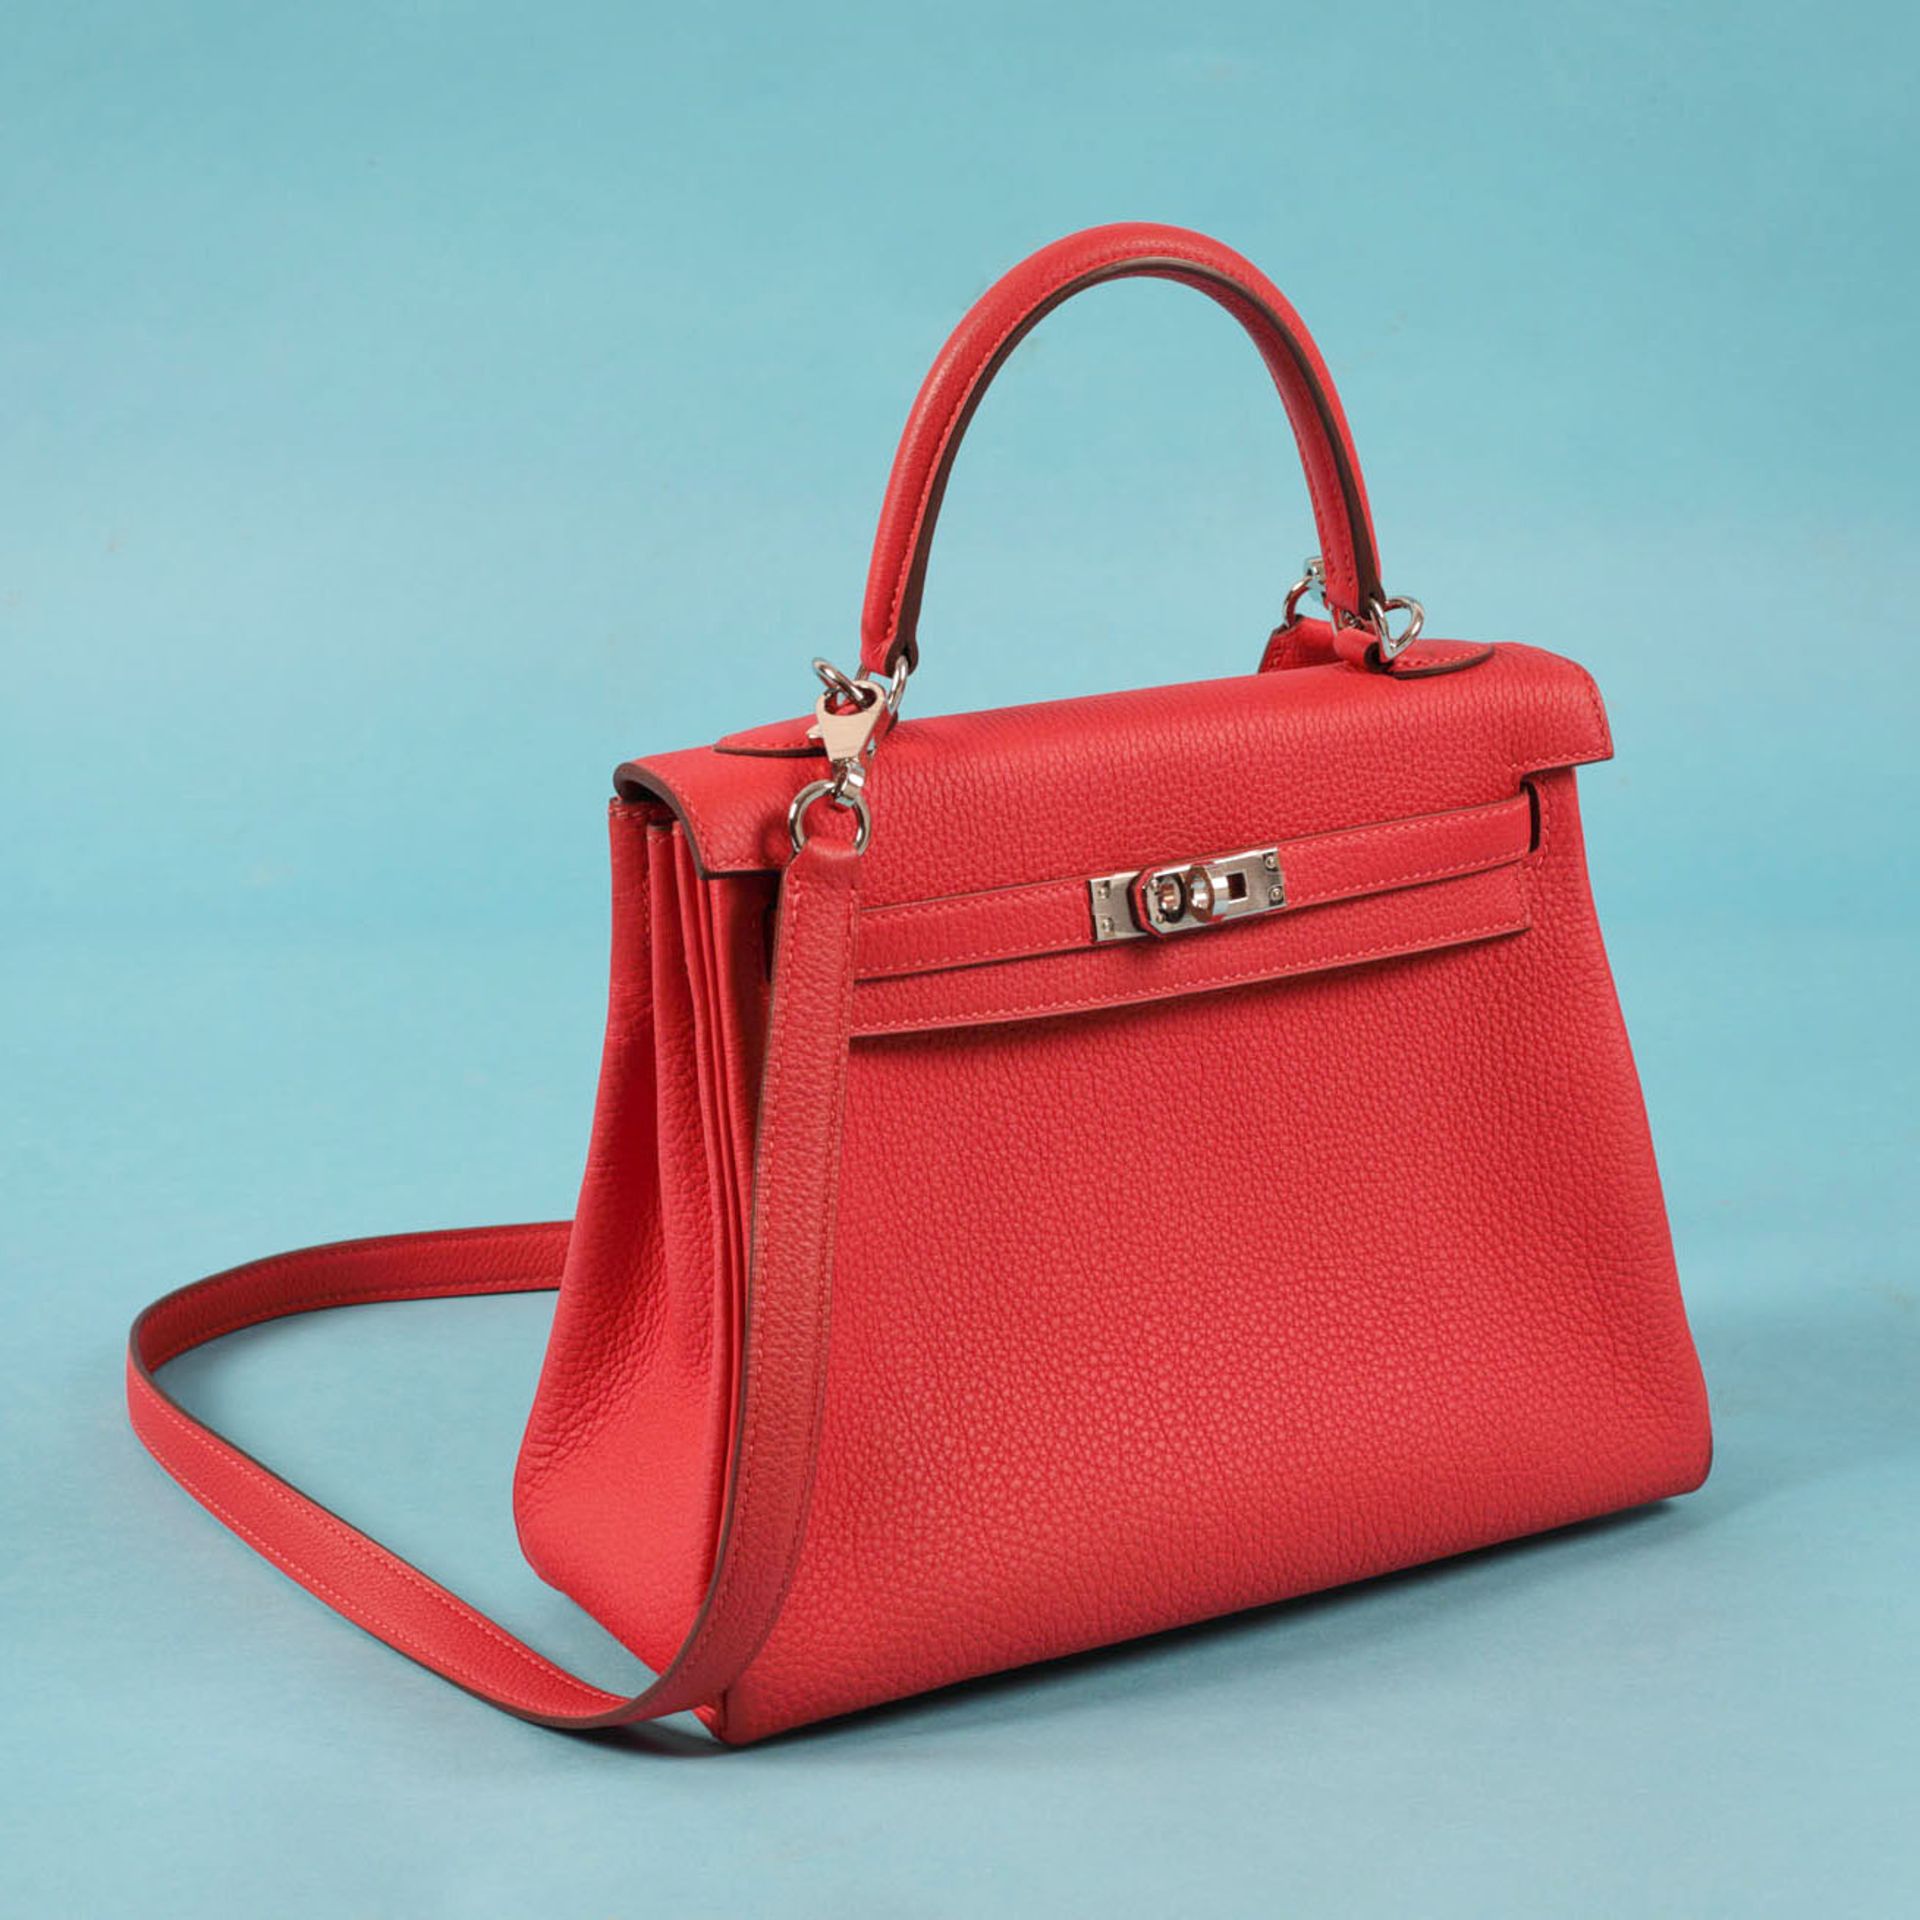 "Kelly 25 Retourne" - Hermès bag, Togo leather, colour Rouge Pivoine, for women, accompanied by doc - Bild 5 aus 6